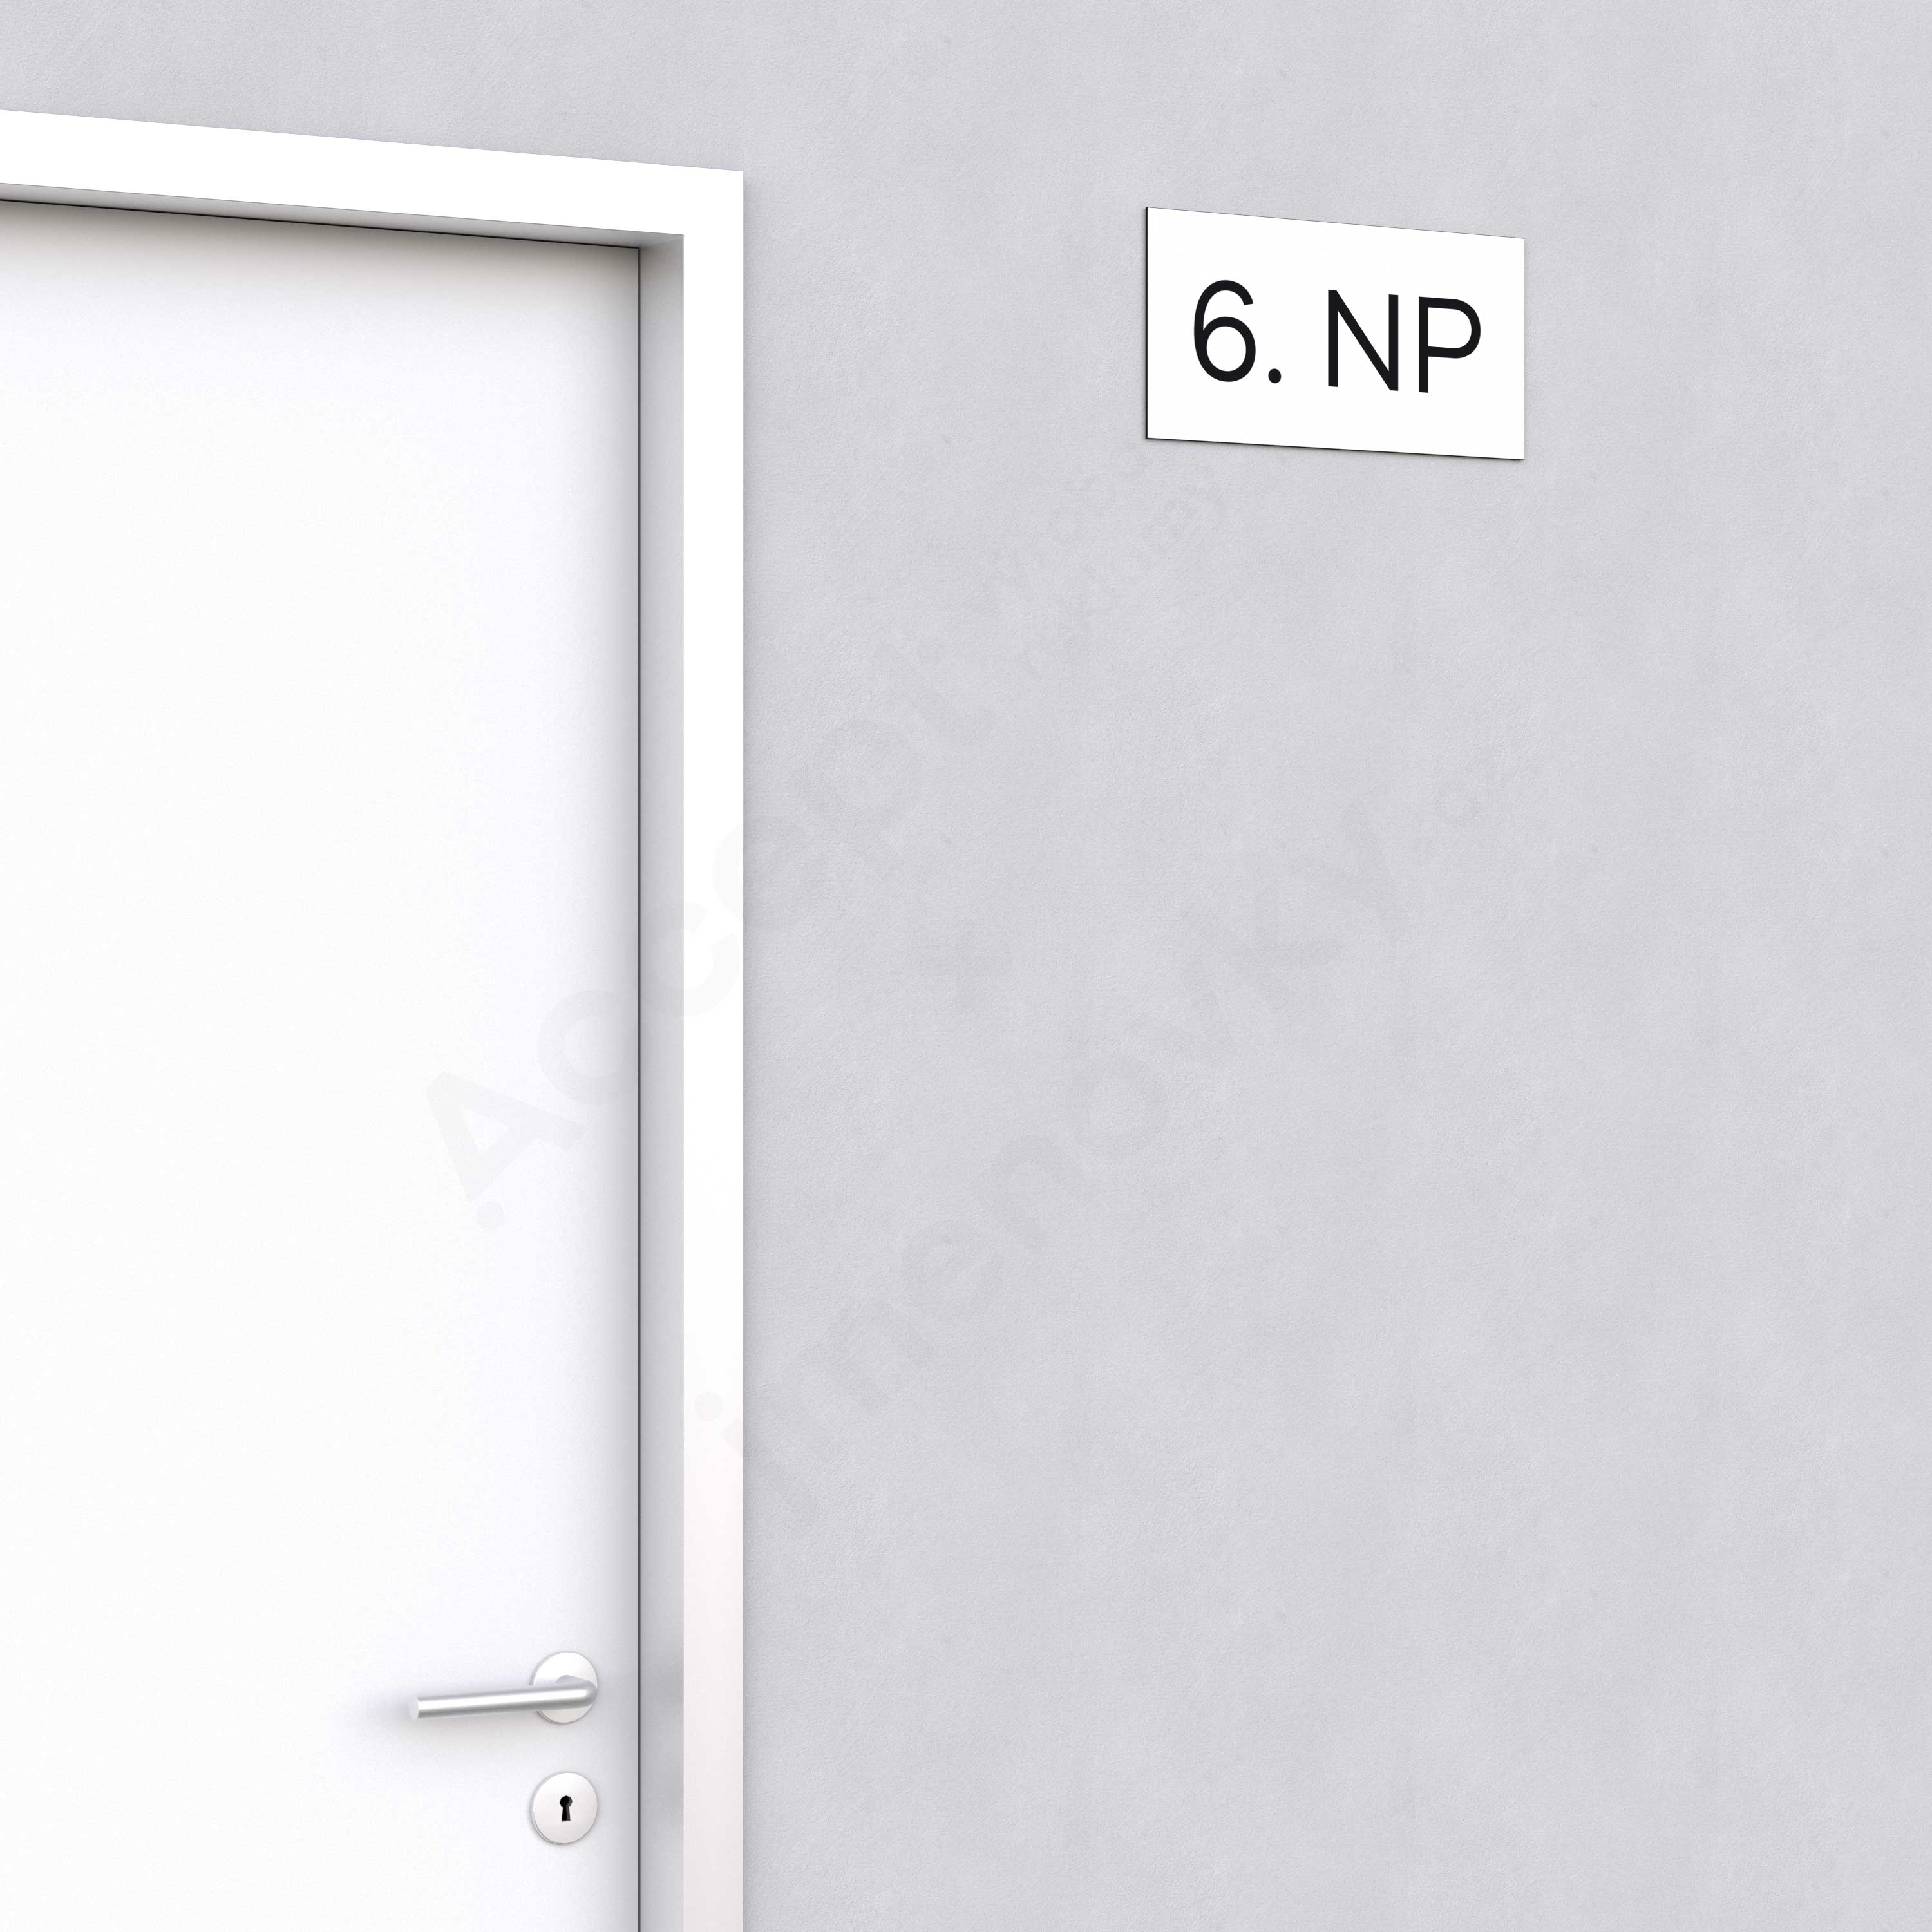 Označení podlaží "6. NP" - bílá tabulka - černý popis - náhled